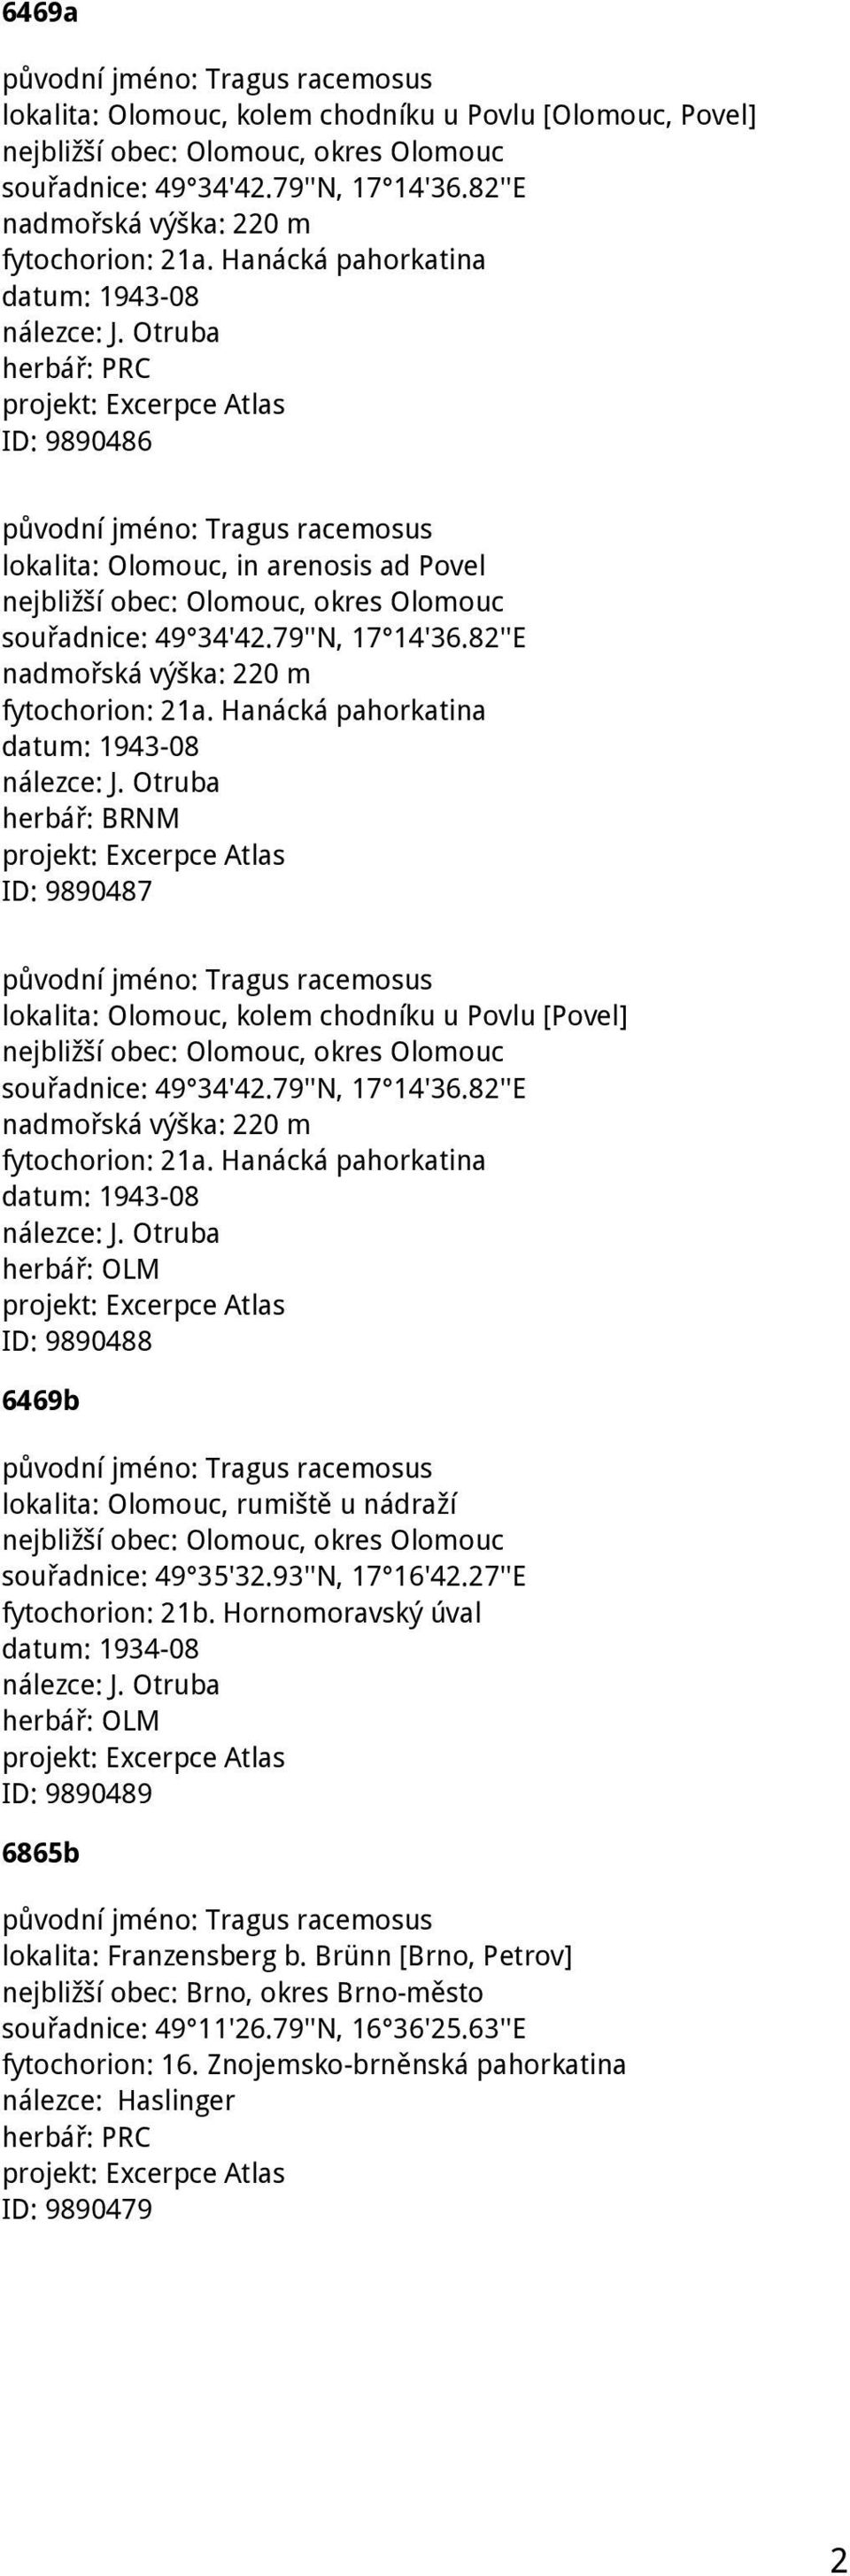 Hanácká pahorkatina datum: 1943-08 herbář: BRNM ID: 9890487 lokalita: Olomouc, kolem chodníku u Povlu [Povel] souřadnice: 49 34'42.79''N, 17 14'36.82''E nadmořská výška: 220 m fytochorion: 21a.